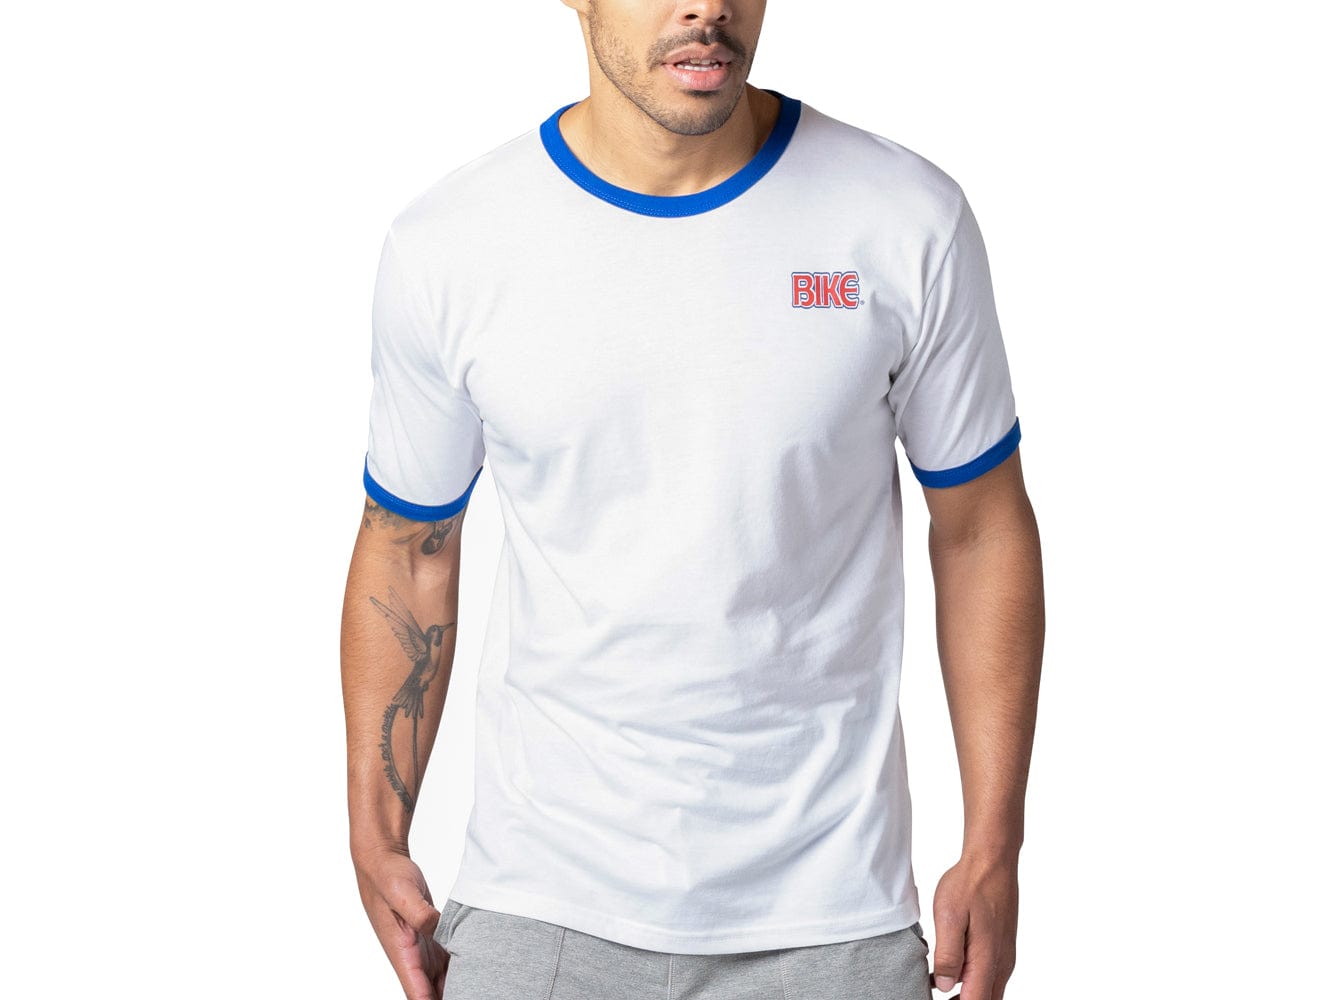 Men's Ringer T-Shirt